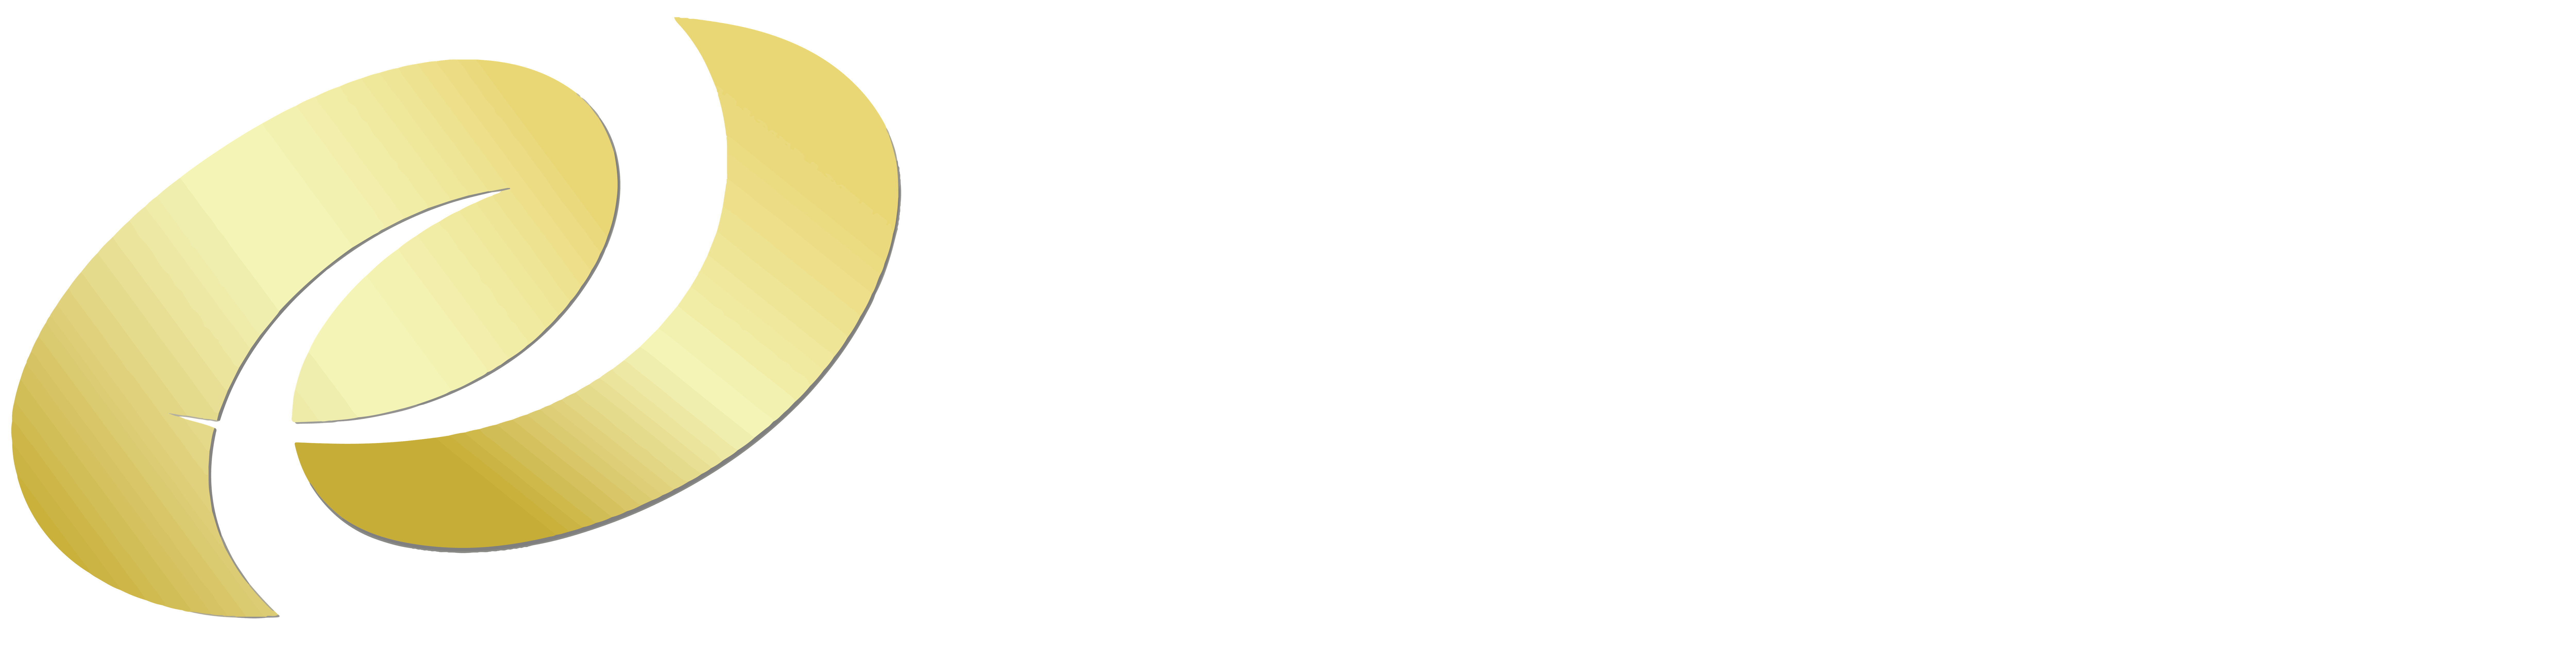 Packer Thomas White Logo